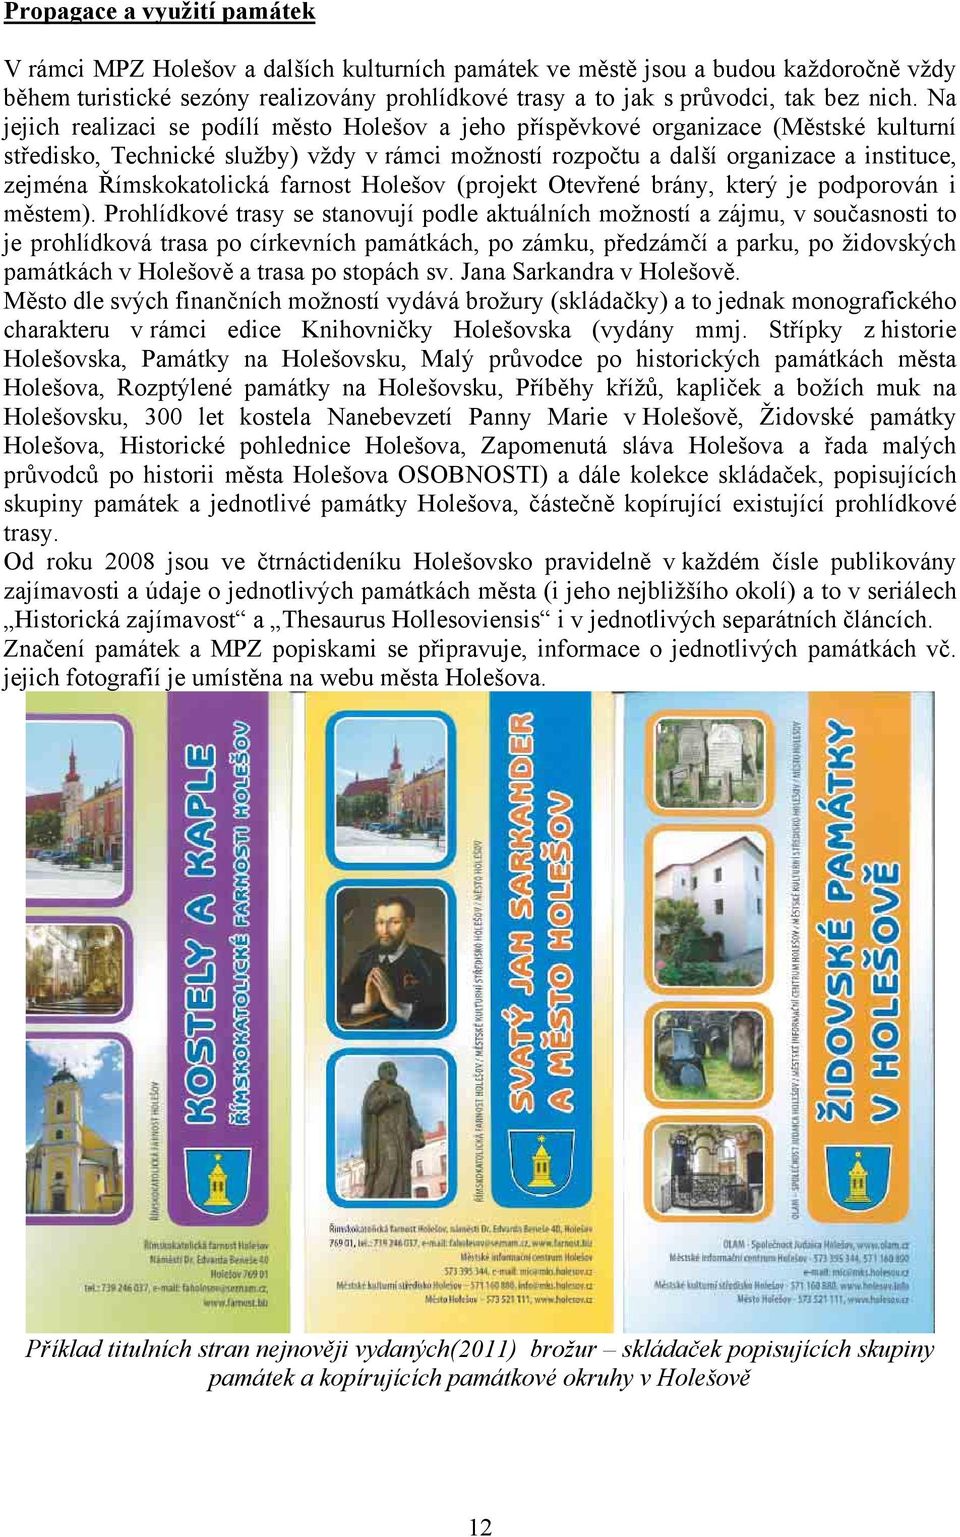 Římskokatolická farnost Holešov (projekt Otevřené brány, který je podporován i městem).